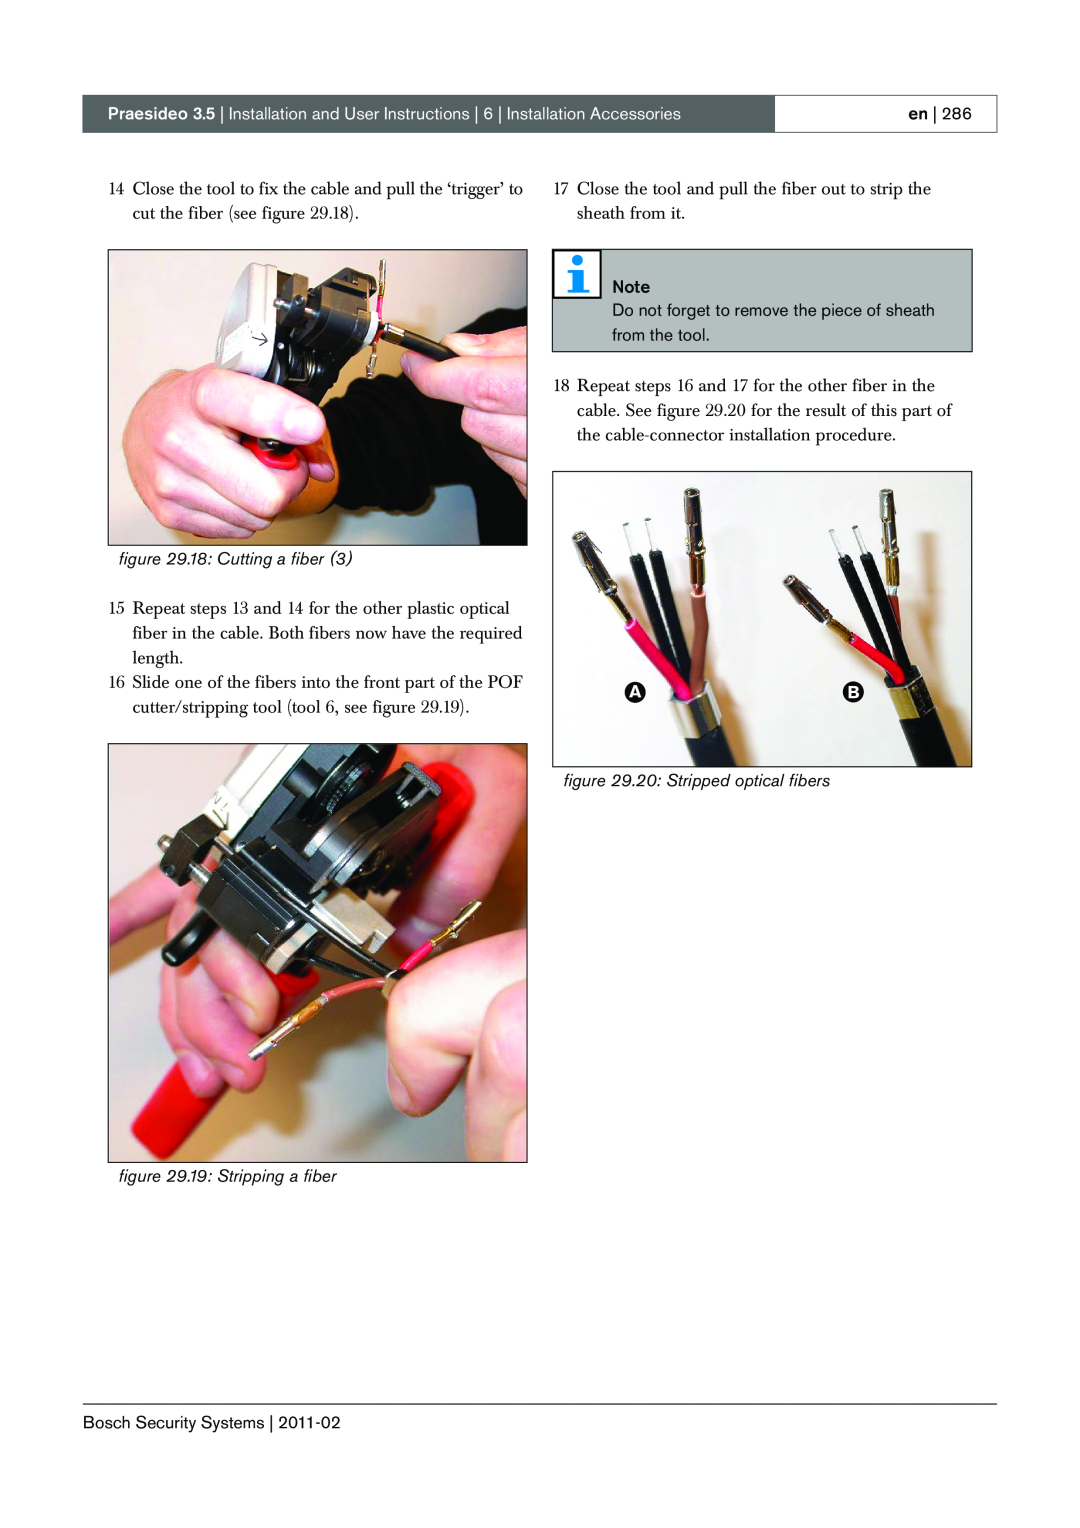 Bosch Appliances 3.5 manual 18: Cutting a fiber, 20 Stripped optical fibers, 19: Stripping a fiber, en, from the tool 